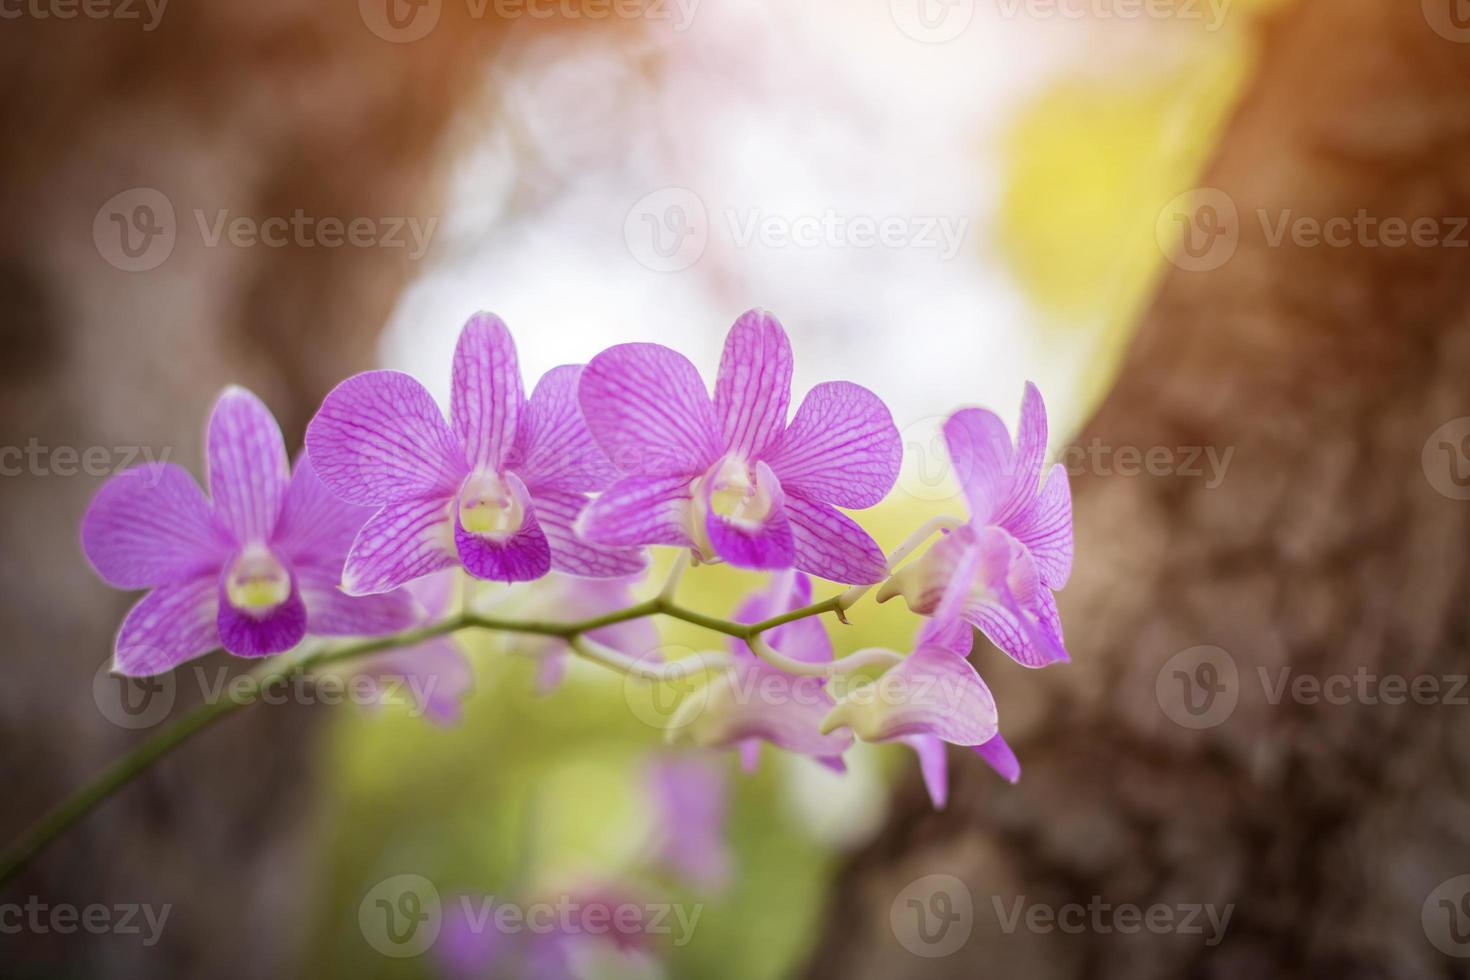 orquídeas, orquídeas moradas, orquídeas moradas es considerada la reina de las flores en tailandia foto